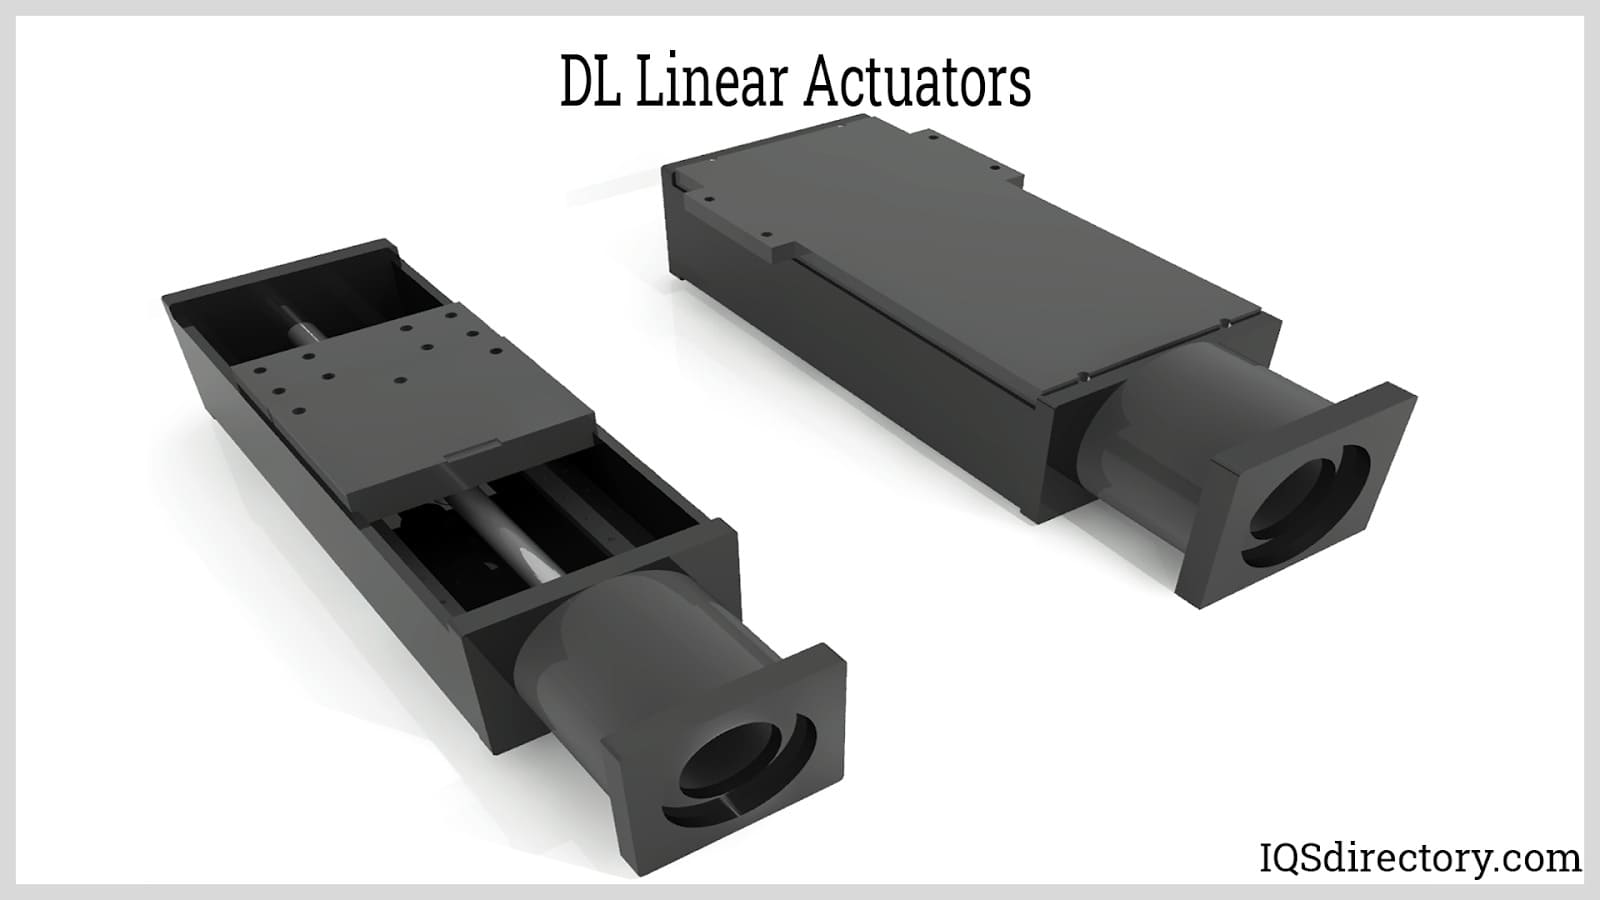 DL Linear Actuators